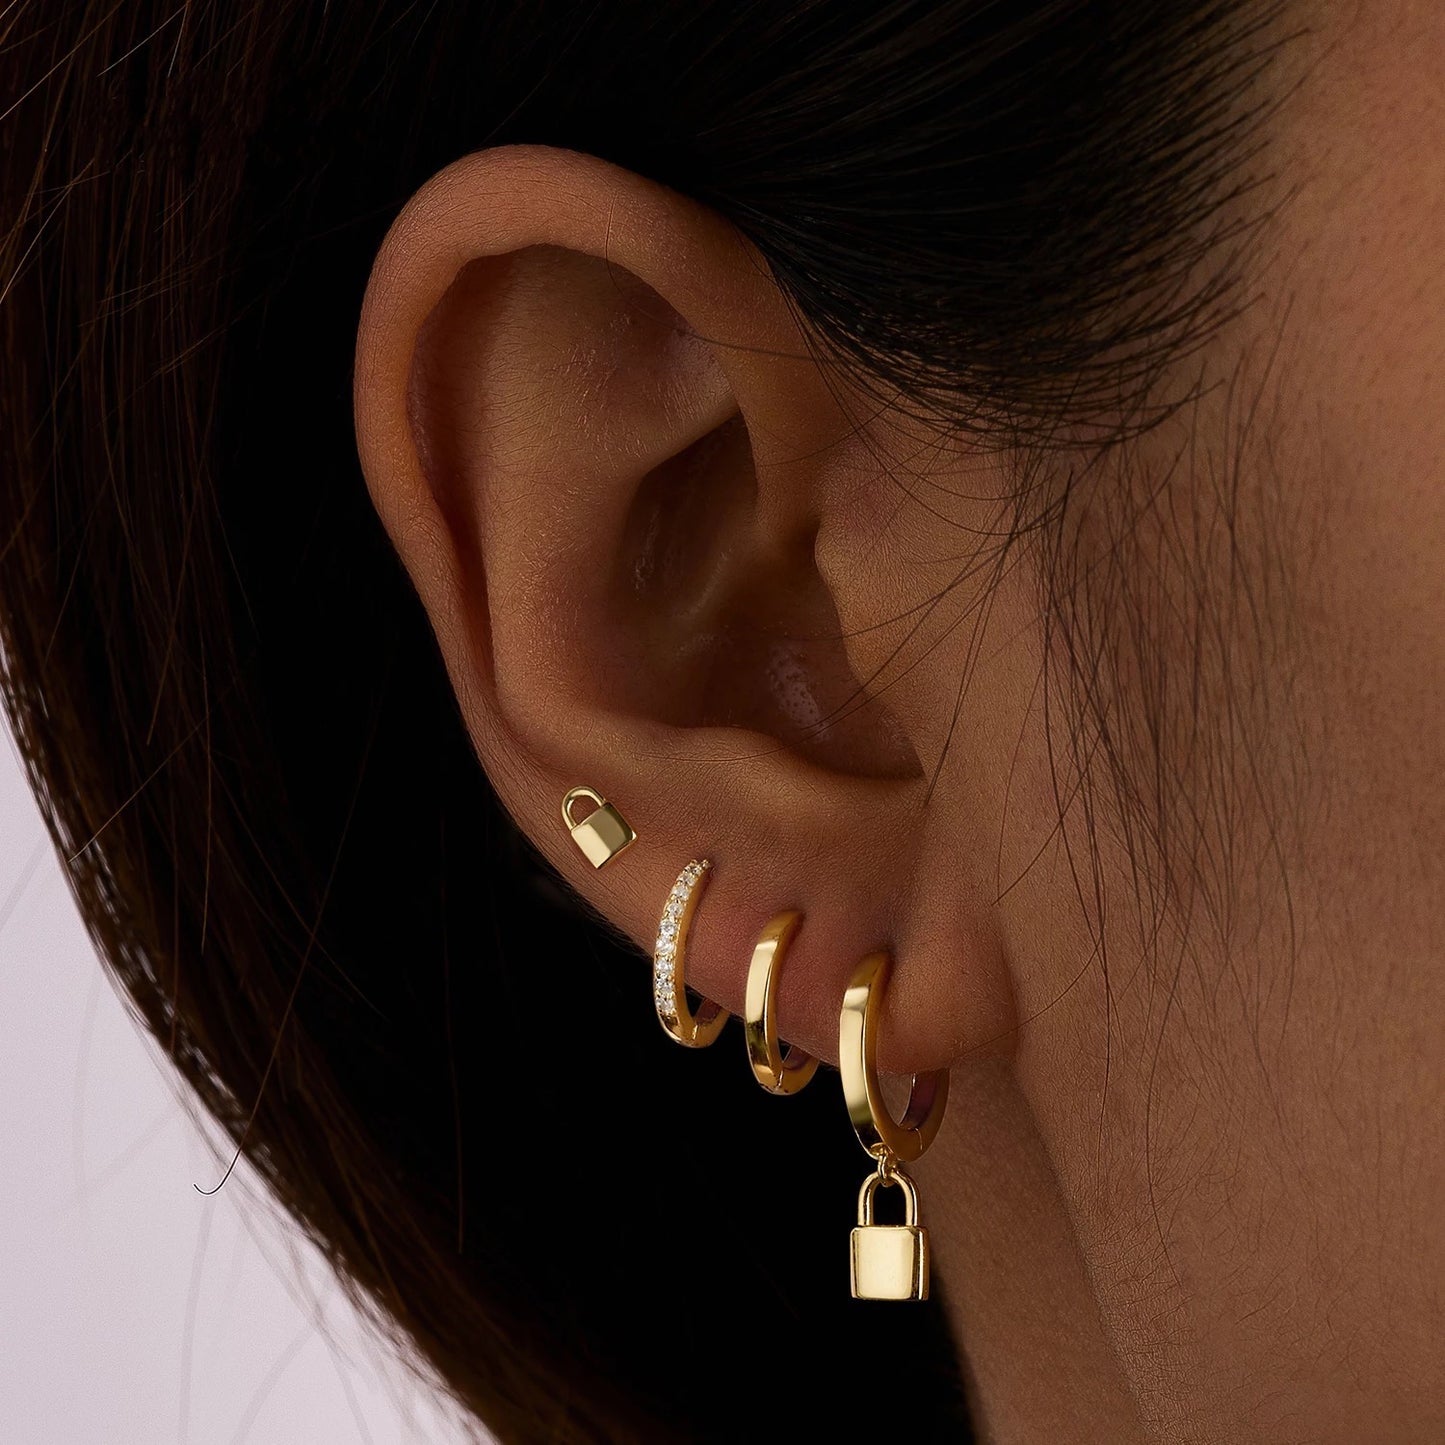 Little Lock Stud Earrings by Kini Jewels